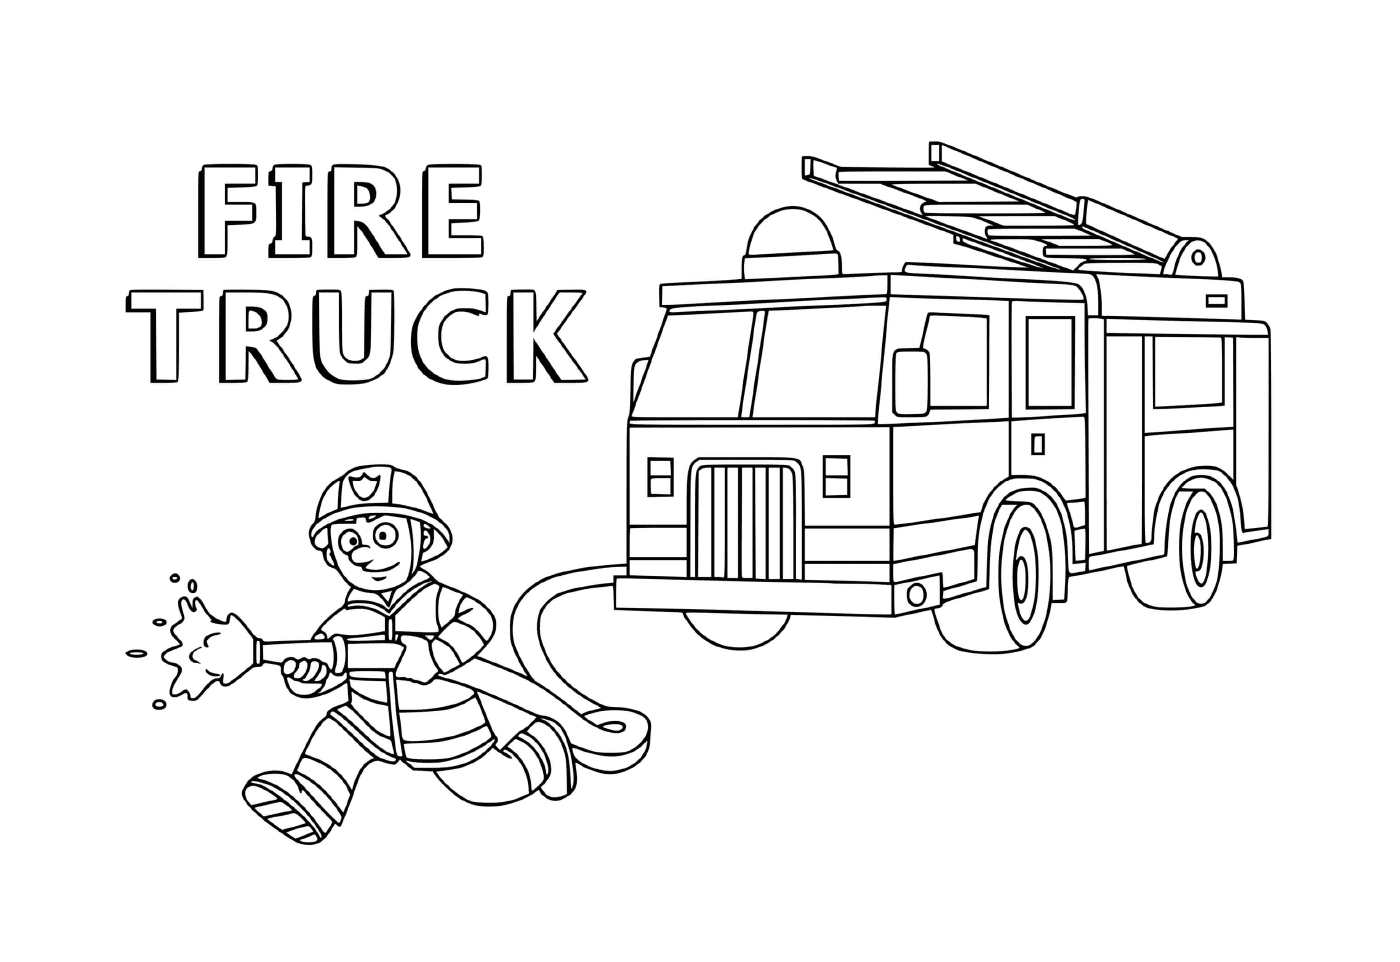  شاحنة رجال الإطفاء في خدمة المواطنين 